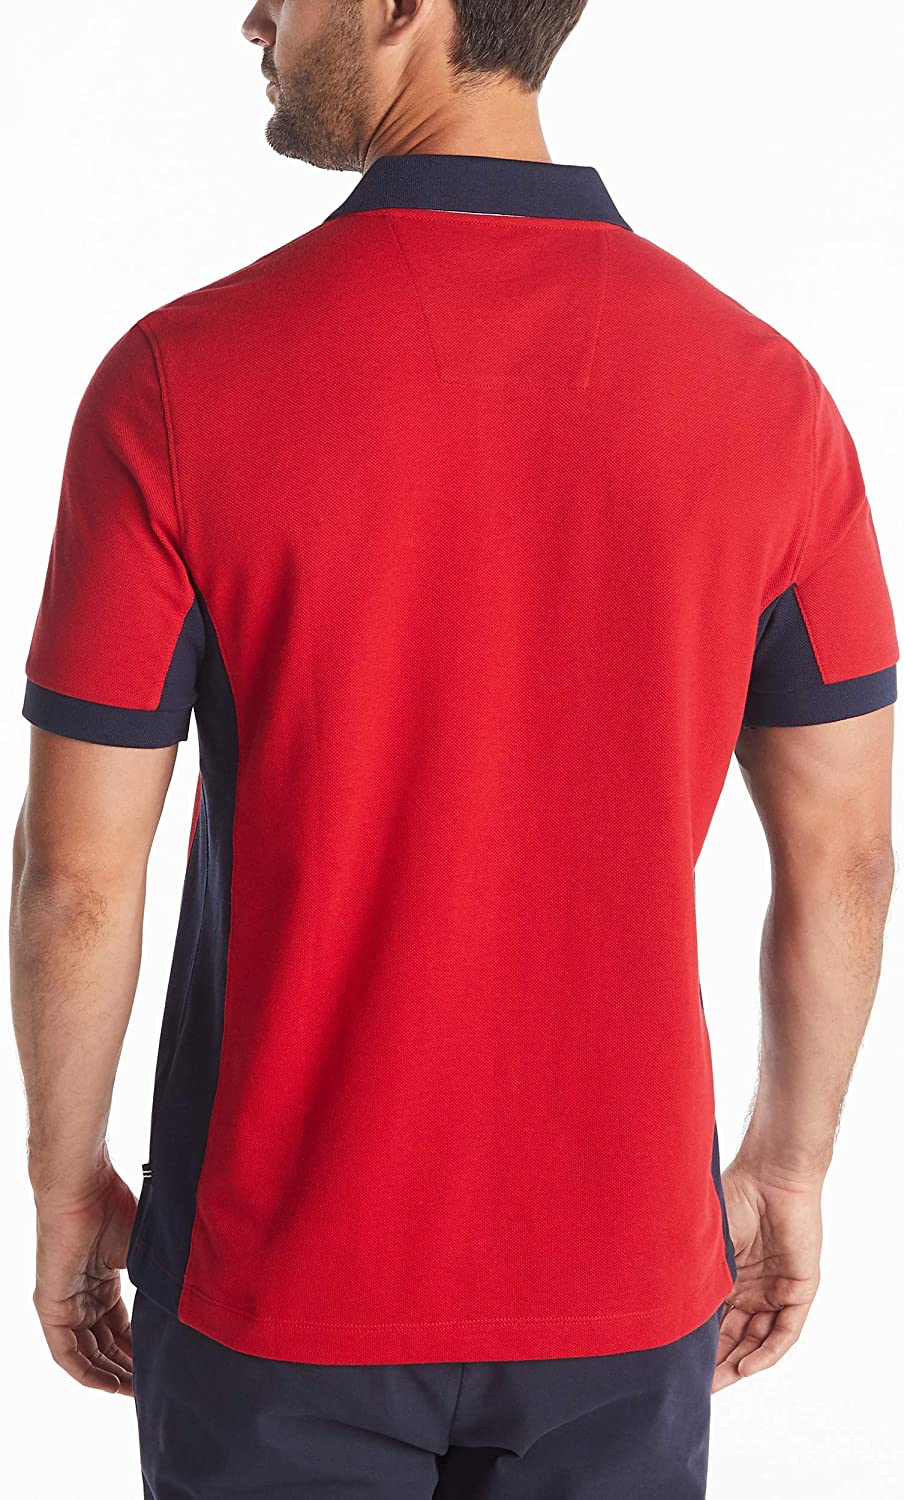 Nautica Men's Short Sleeve Color Block Performance Pique Polo Shirt | eBay